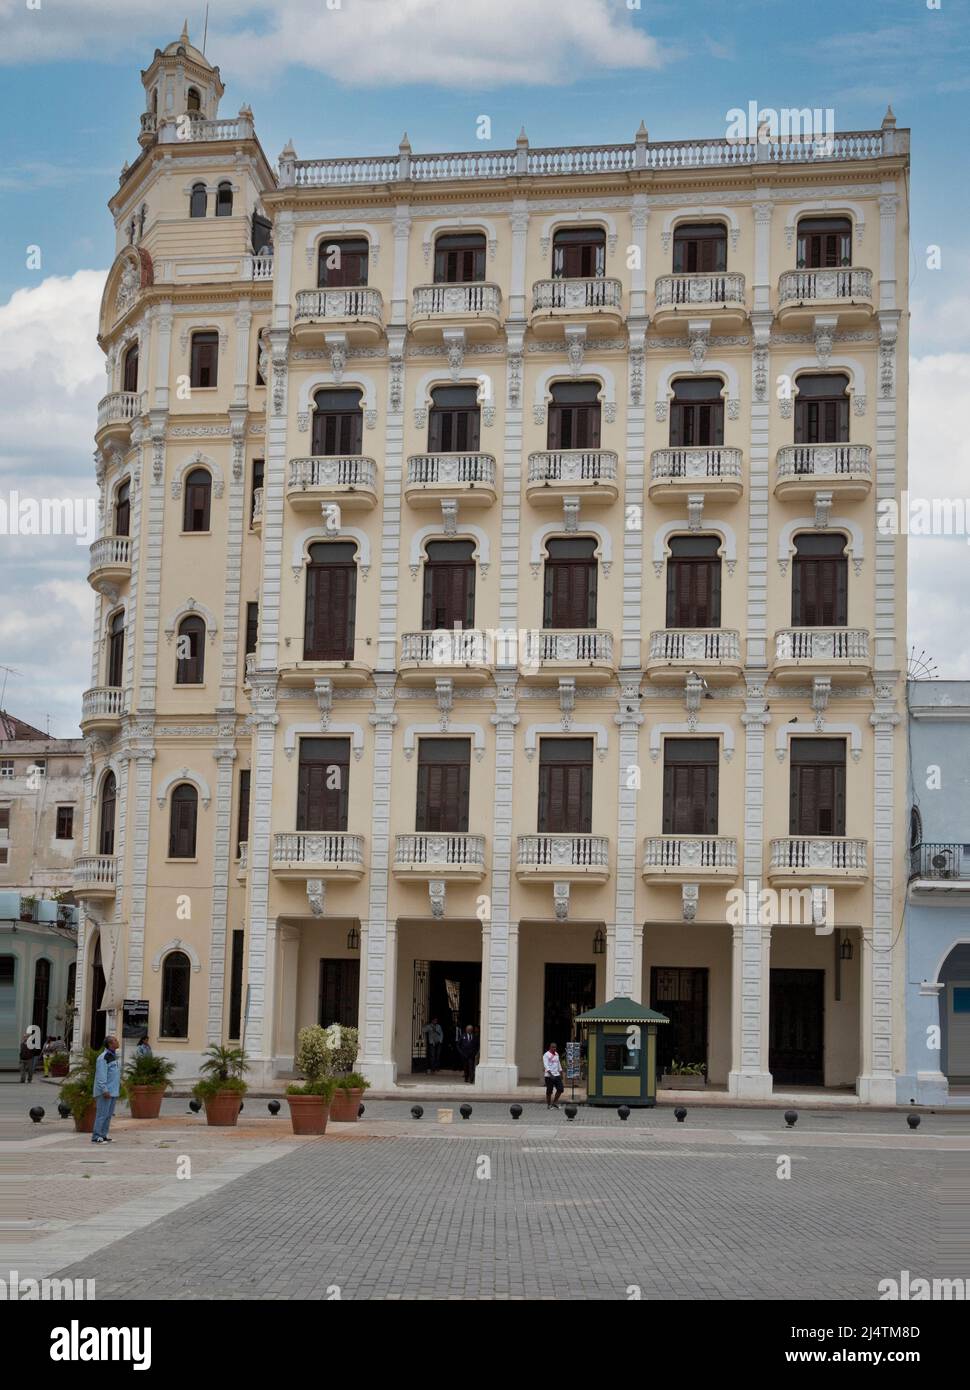 Cuba, l'Avana. Edificio in Plaza Vieja. Camera Obscura sul piano superiore. Foto Stock